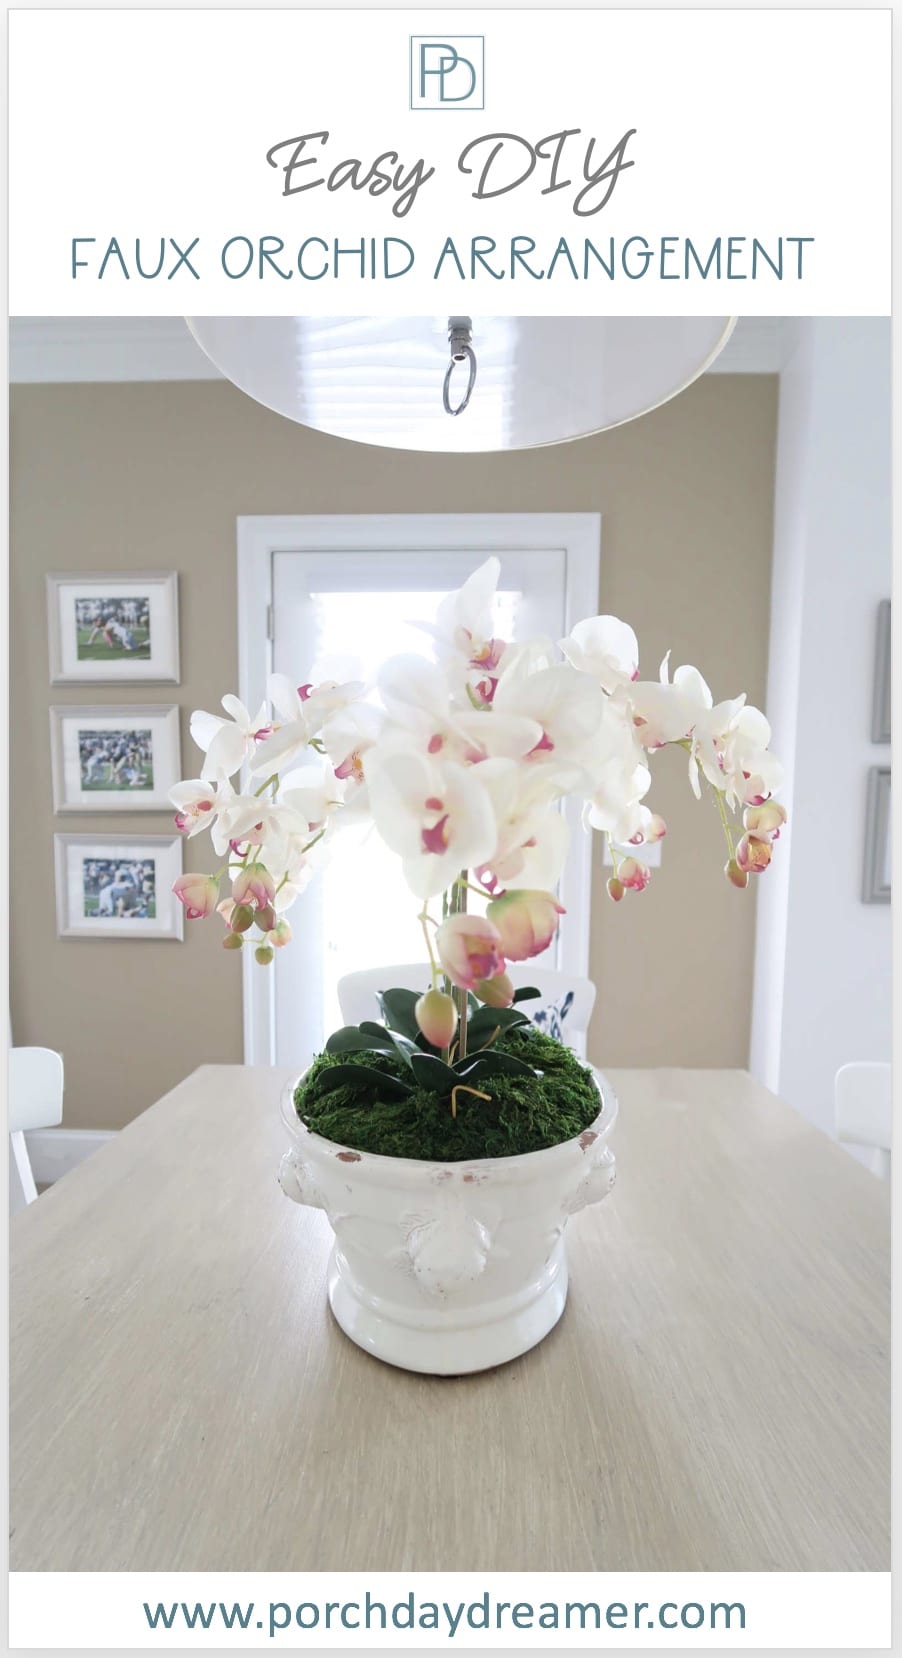 Faux Orchid Arrangement in white cachepot planter